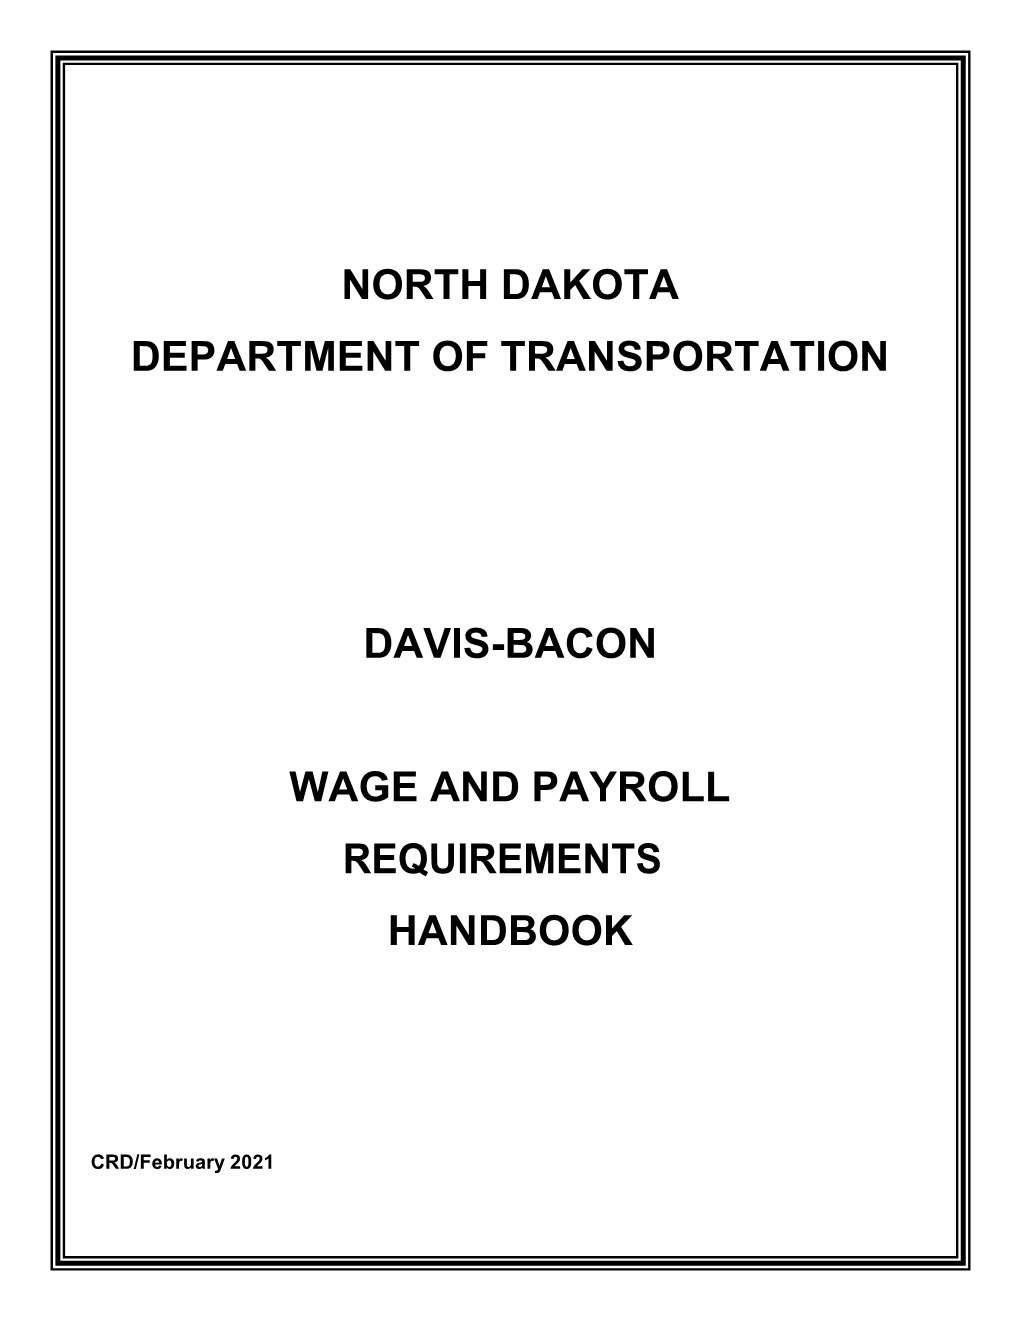 Davis-Bacon Wage and Payroll Requirements Handbook